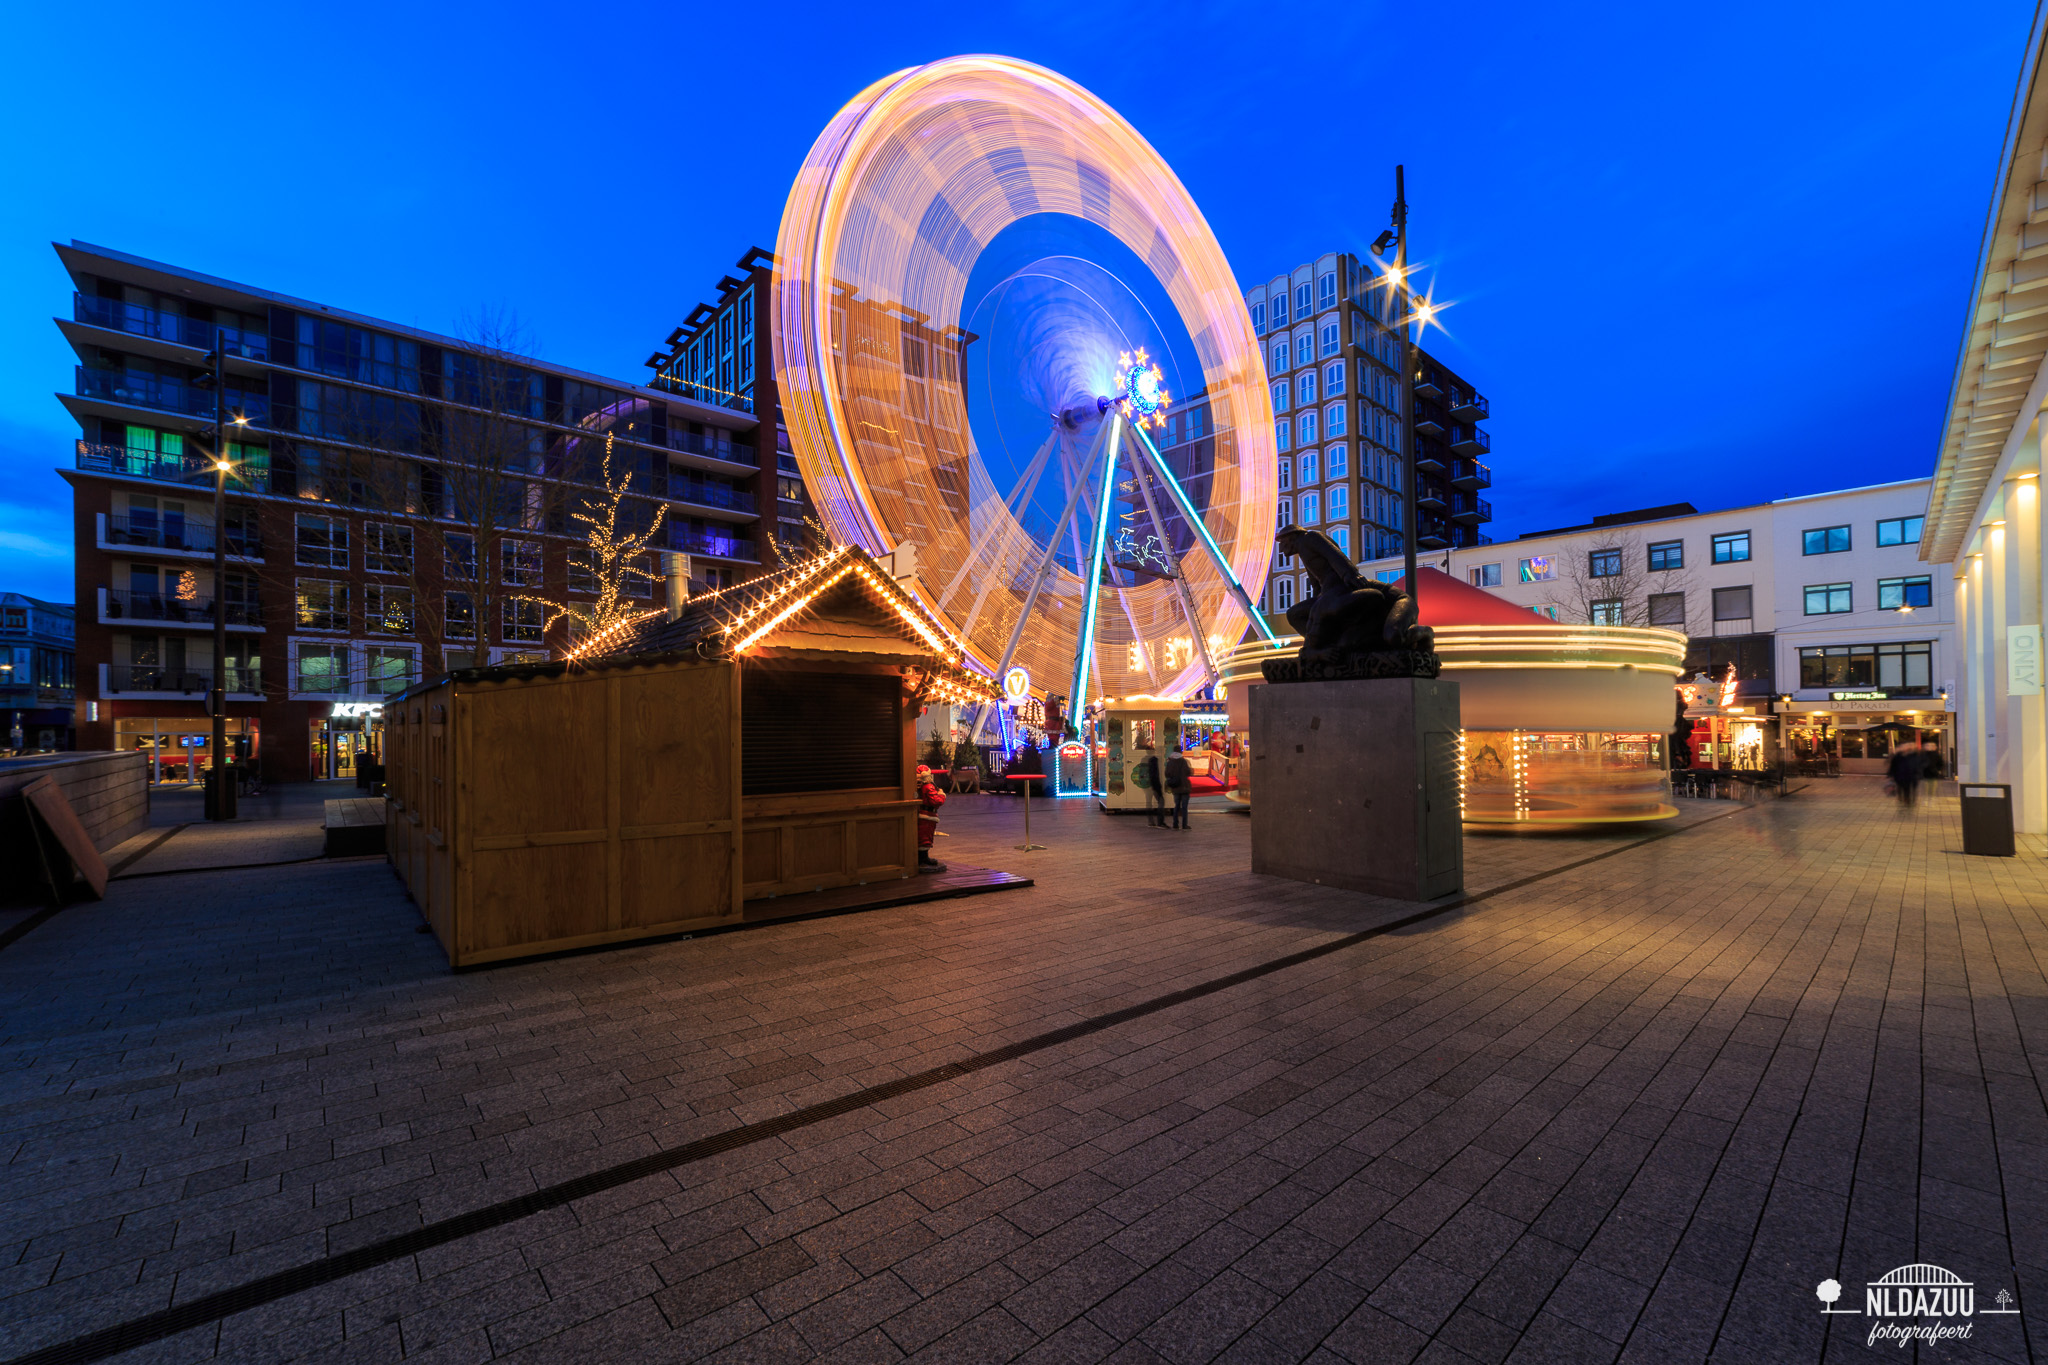 nldazuu fotografeert blauwe uur, Blue hour opname van de kerstmarkt op Plein 44 te Nijmegen